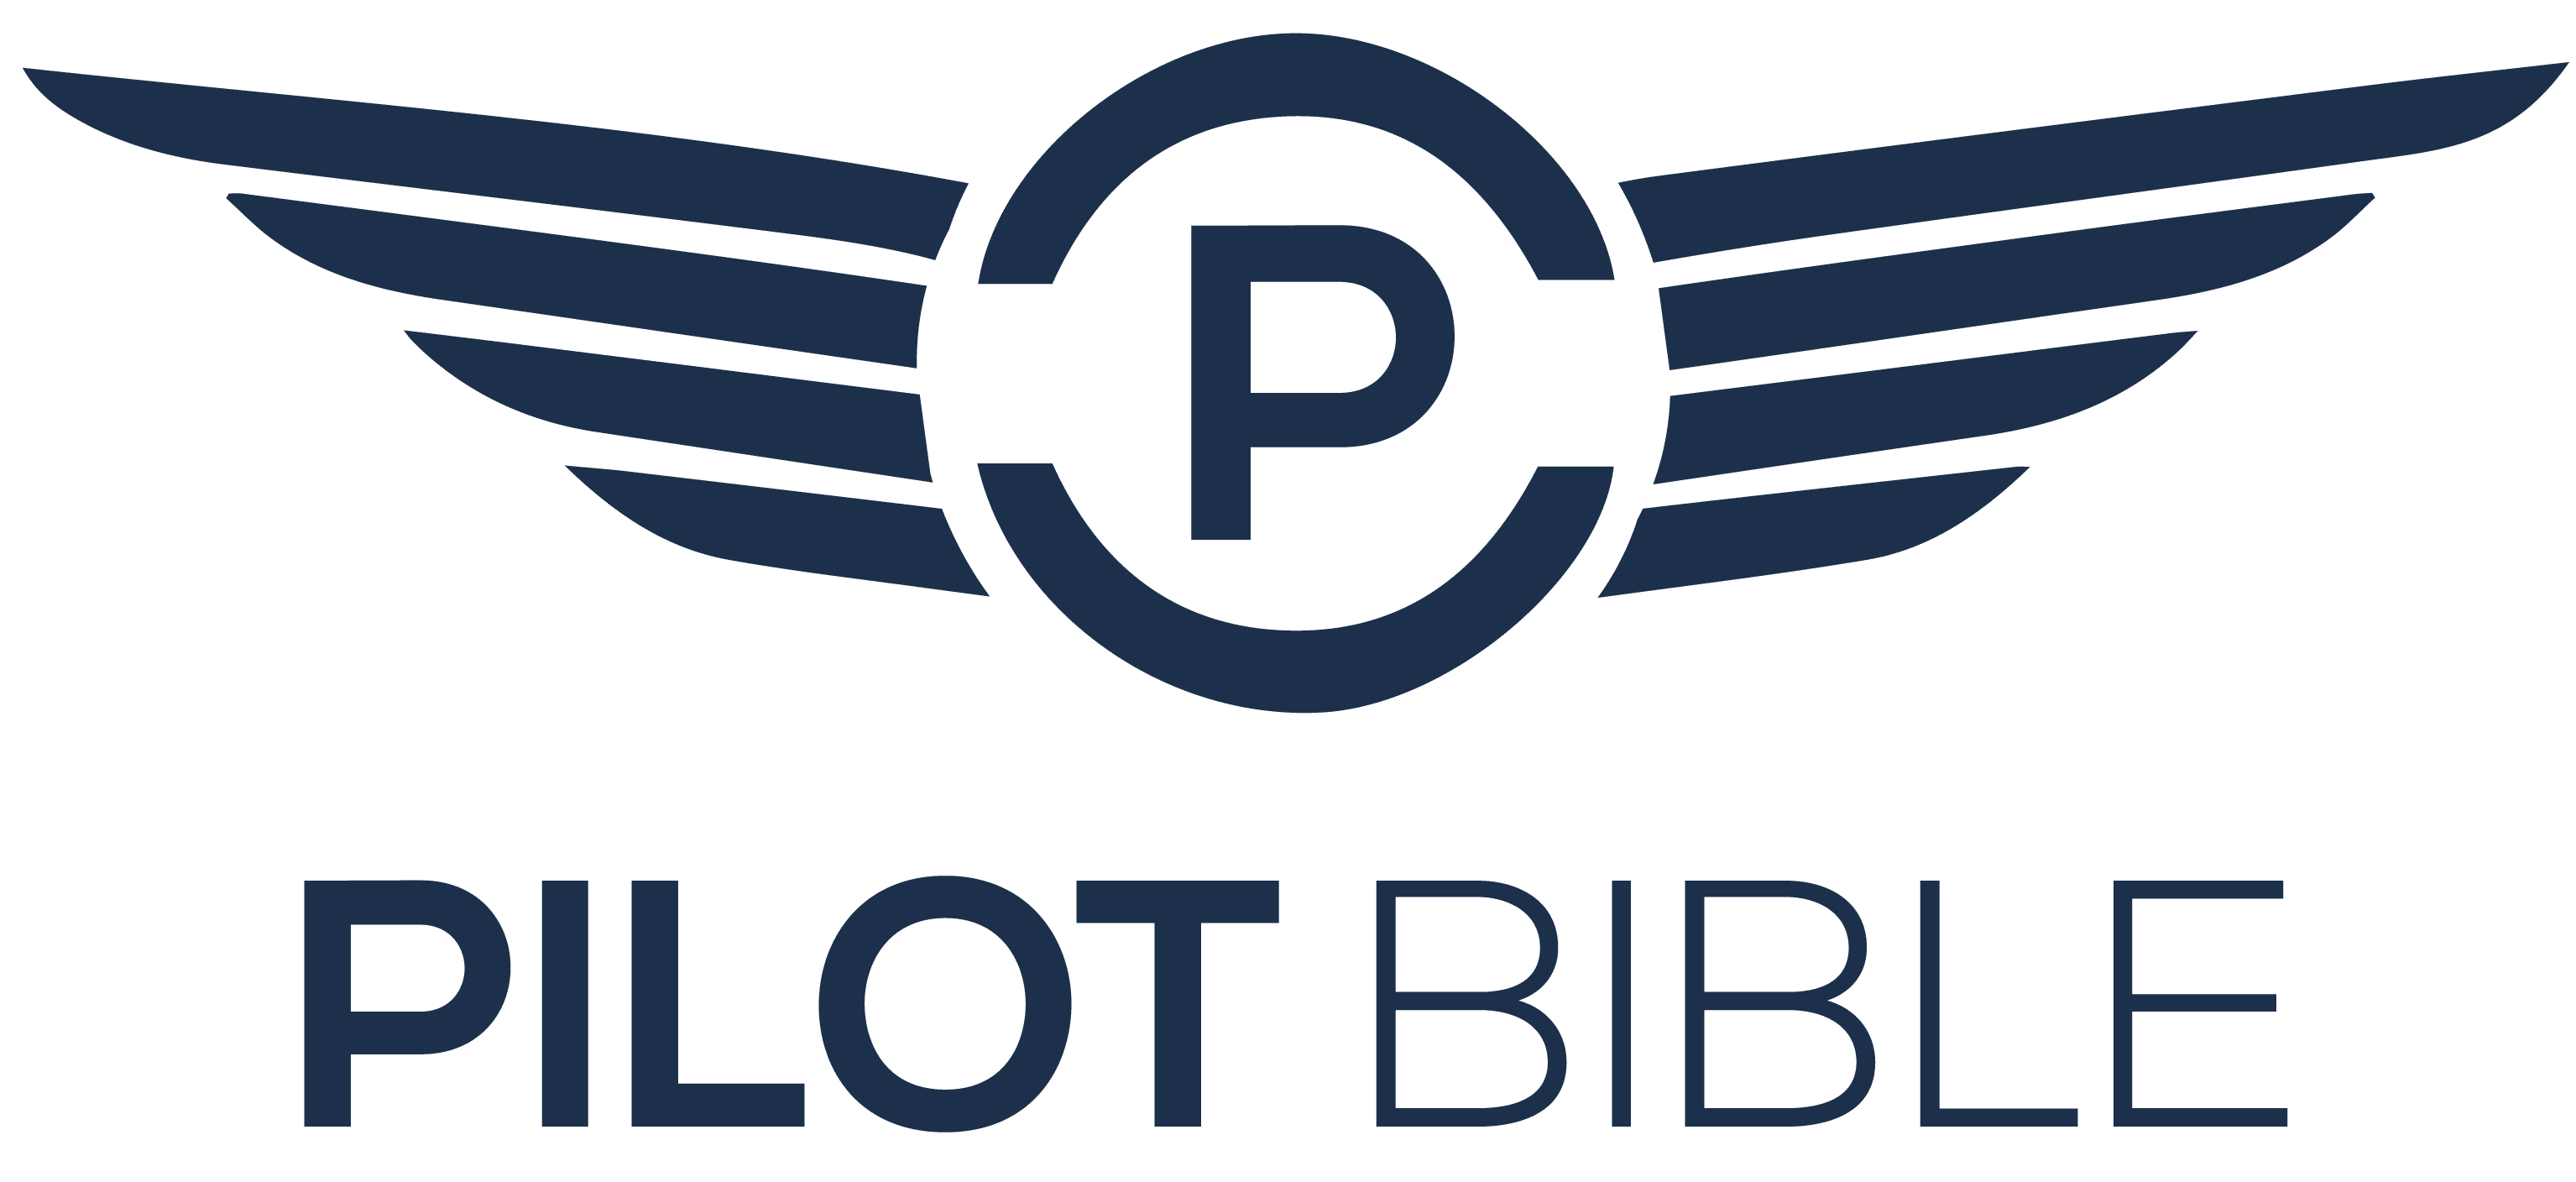 Pilot Bible Logo